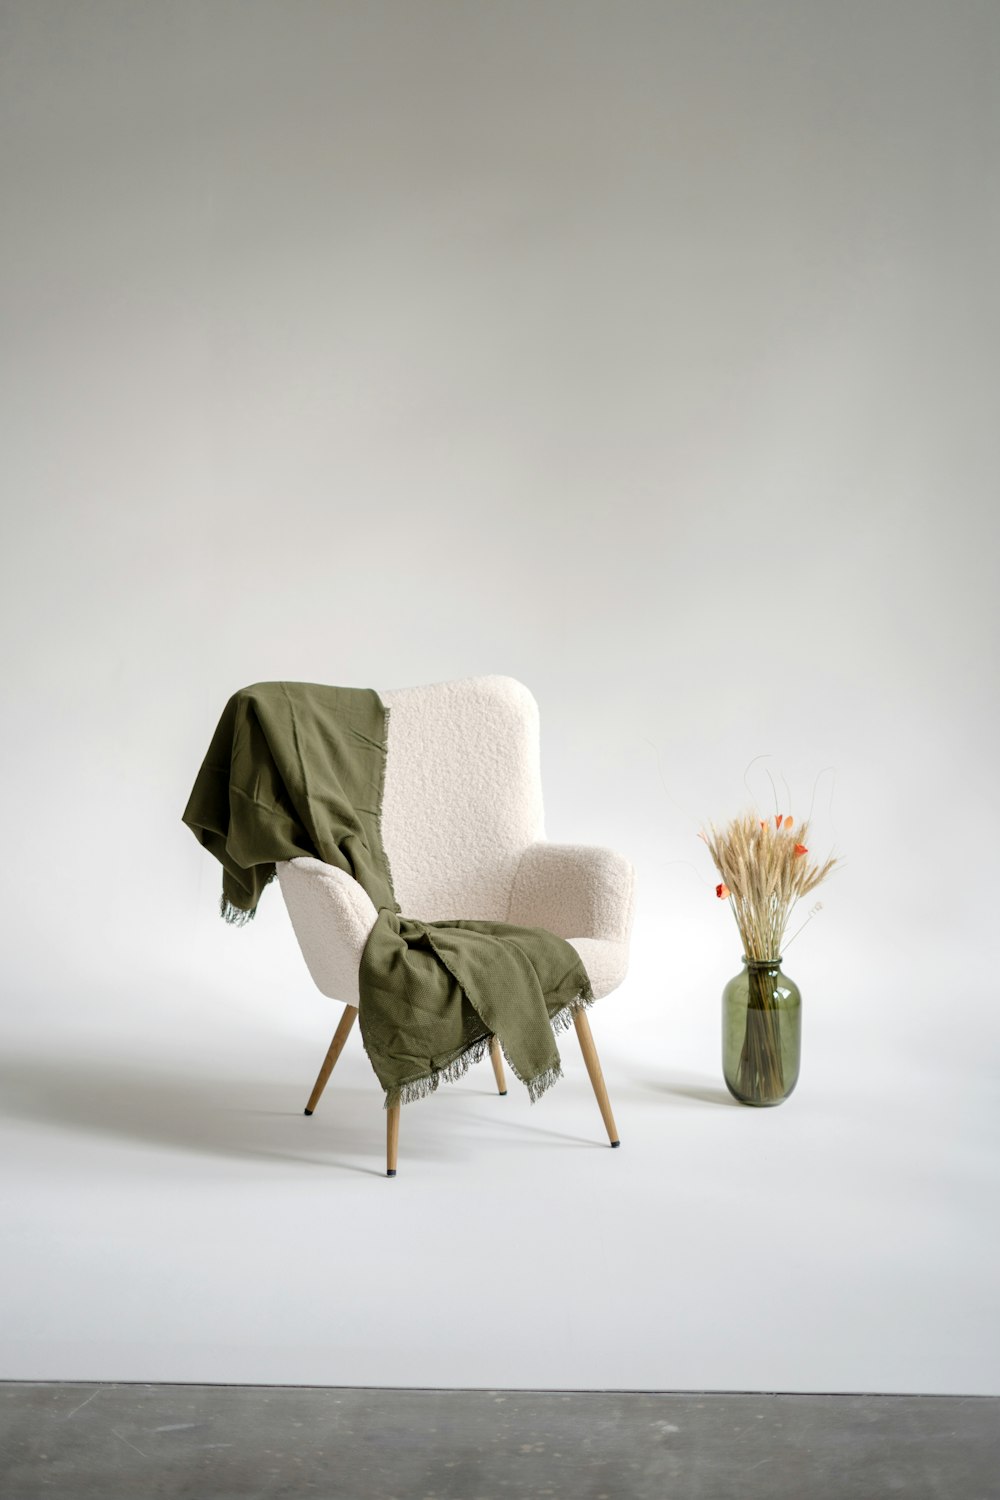 꽃이 꽂힌 꽃병 옆에 담요가 깔린 의자